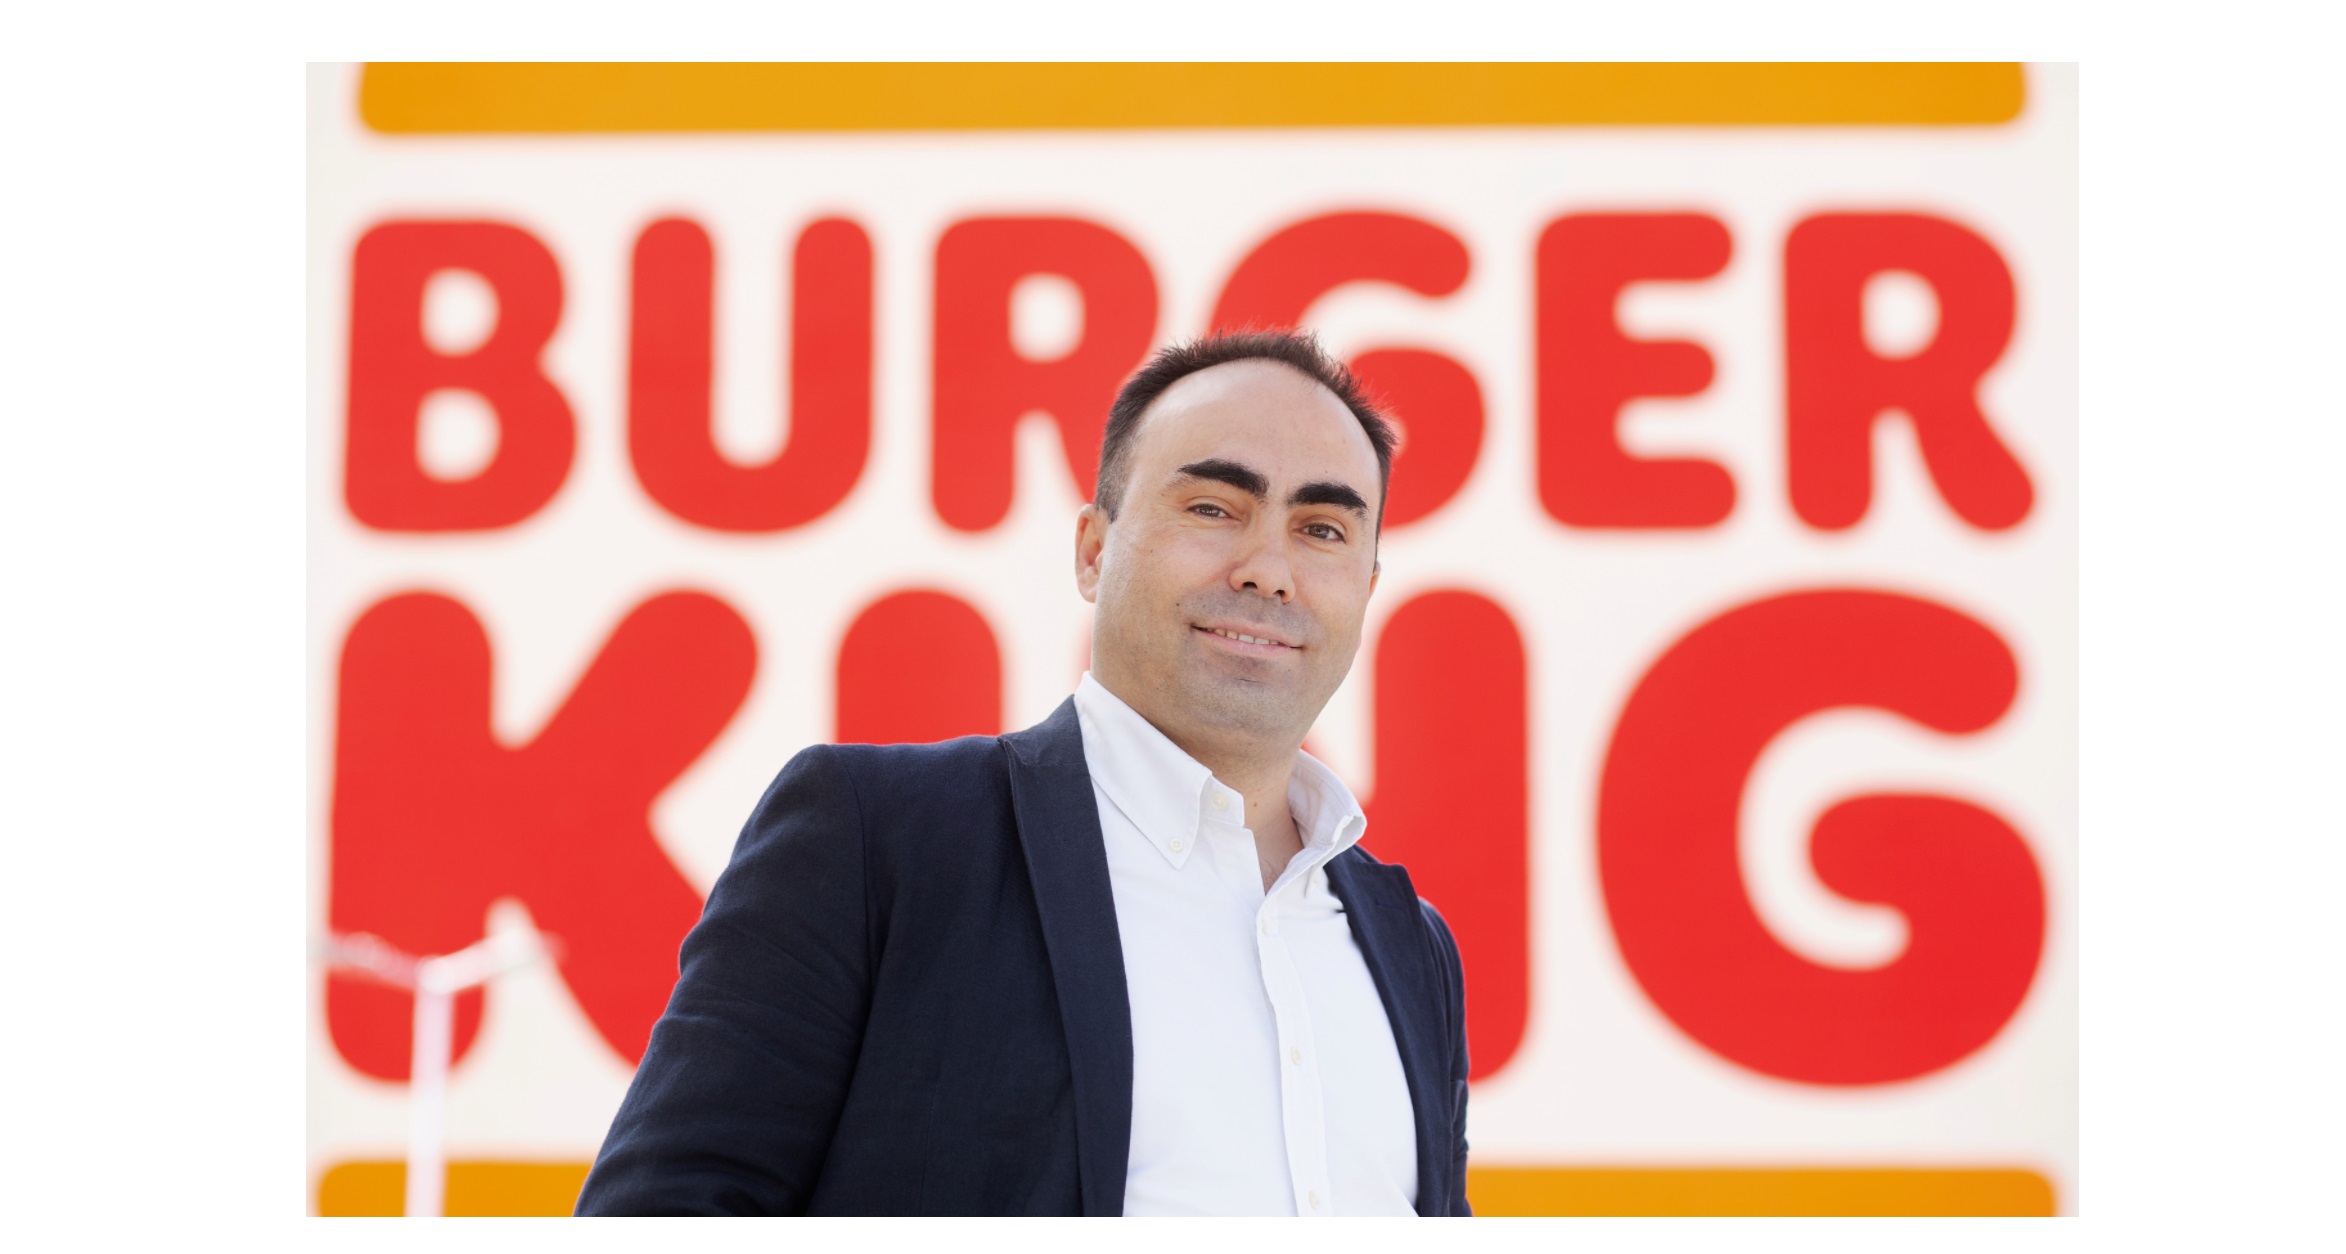 Burger King,Jorge Carvalho ,Director General , programapublicidad